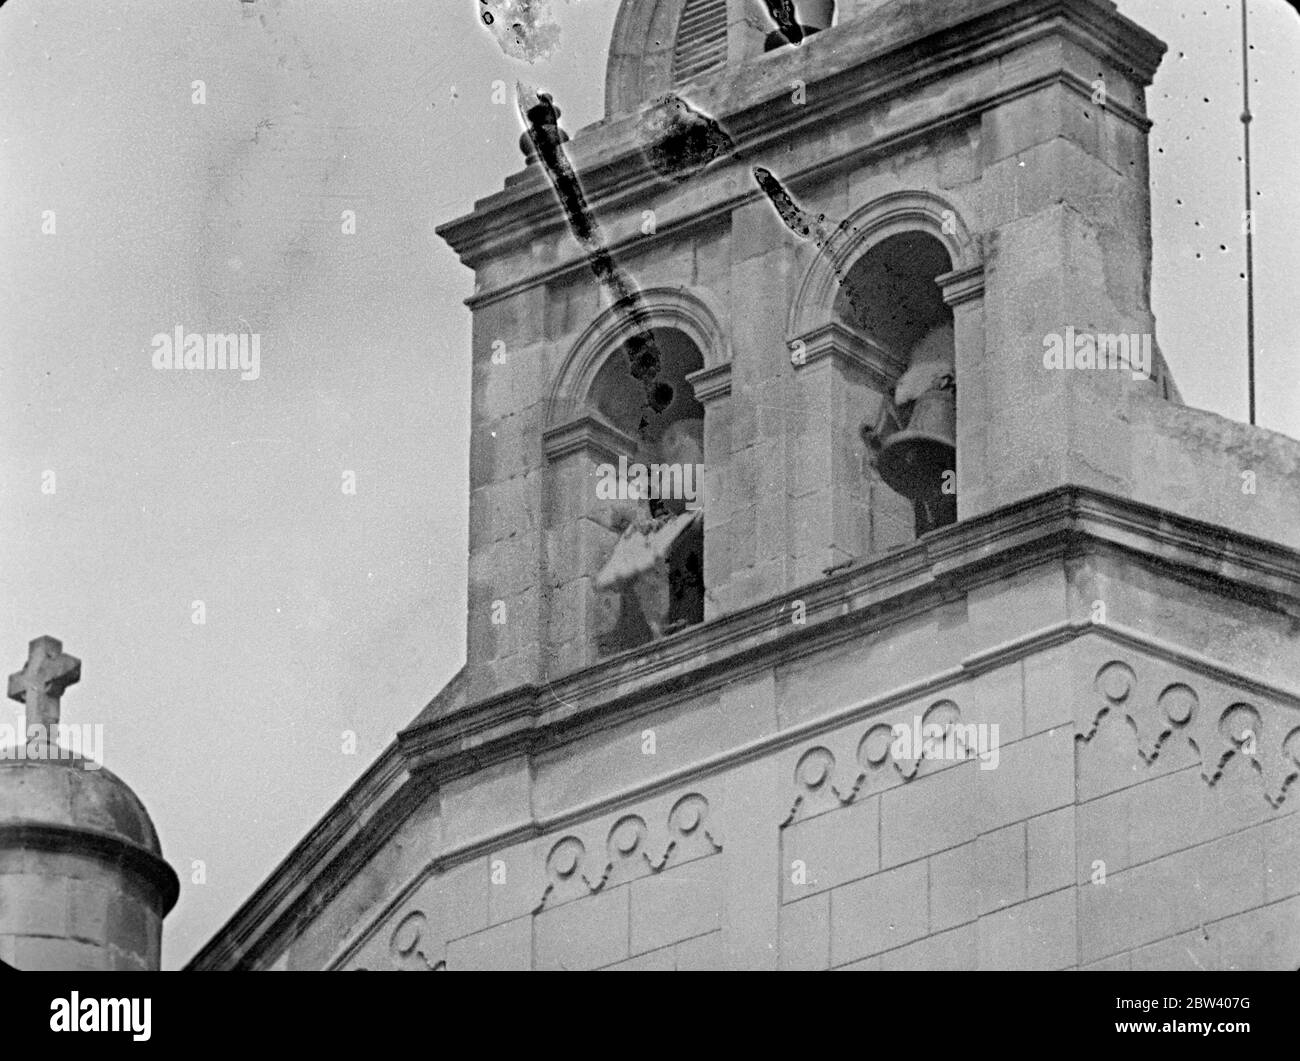 L'arrivée des troupes nationalistes à San Sebastián / Donostia. San Sebastian: [? Caractéristique architecturale d'une église / cathédrale ?] Septembre 1936 Banque D'Images